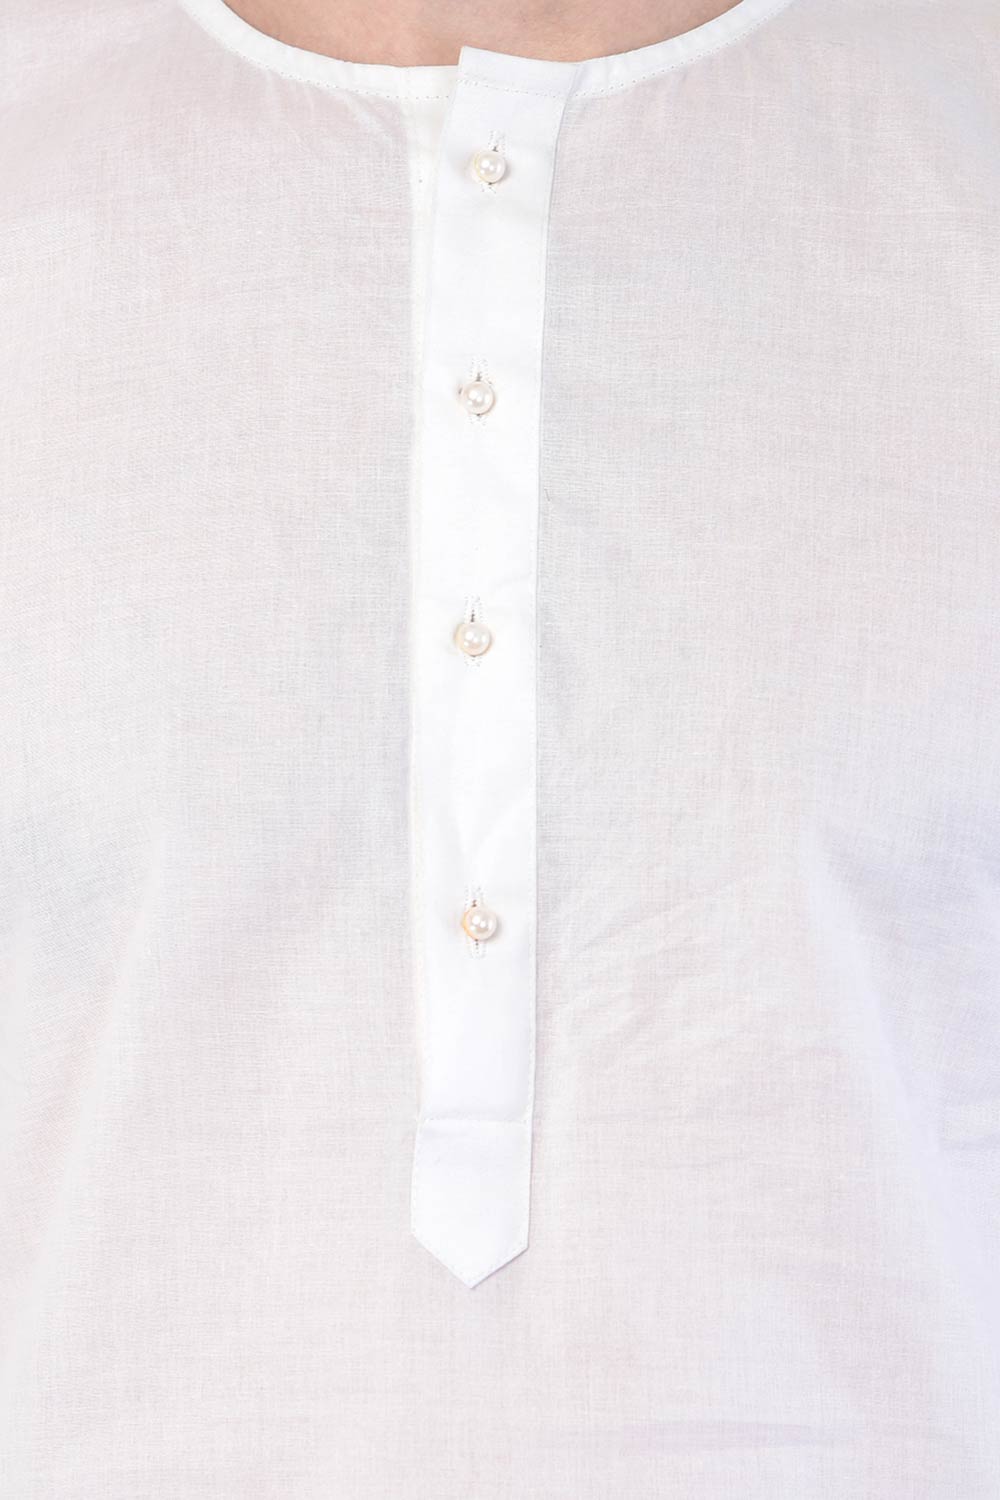 Buy Men's blended Cotton Solid Kurta Set in White - Side